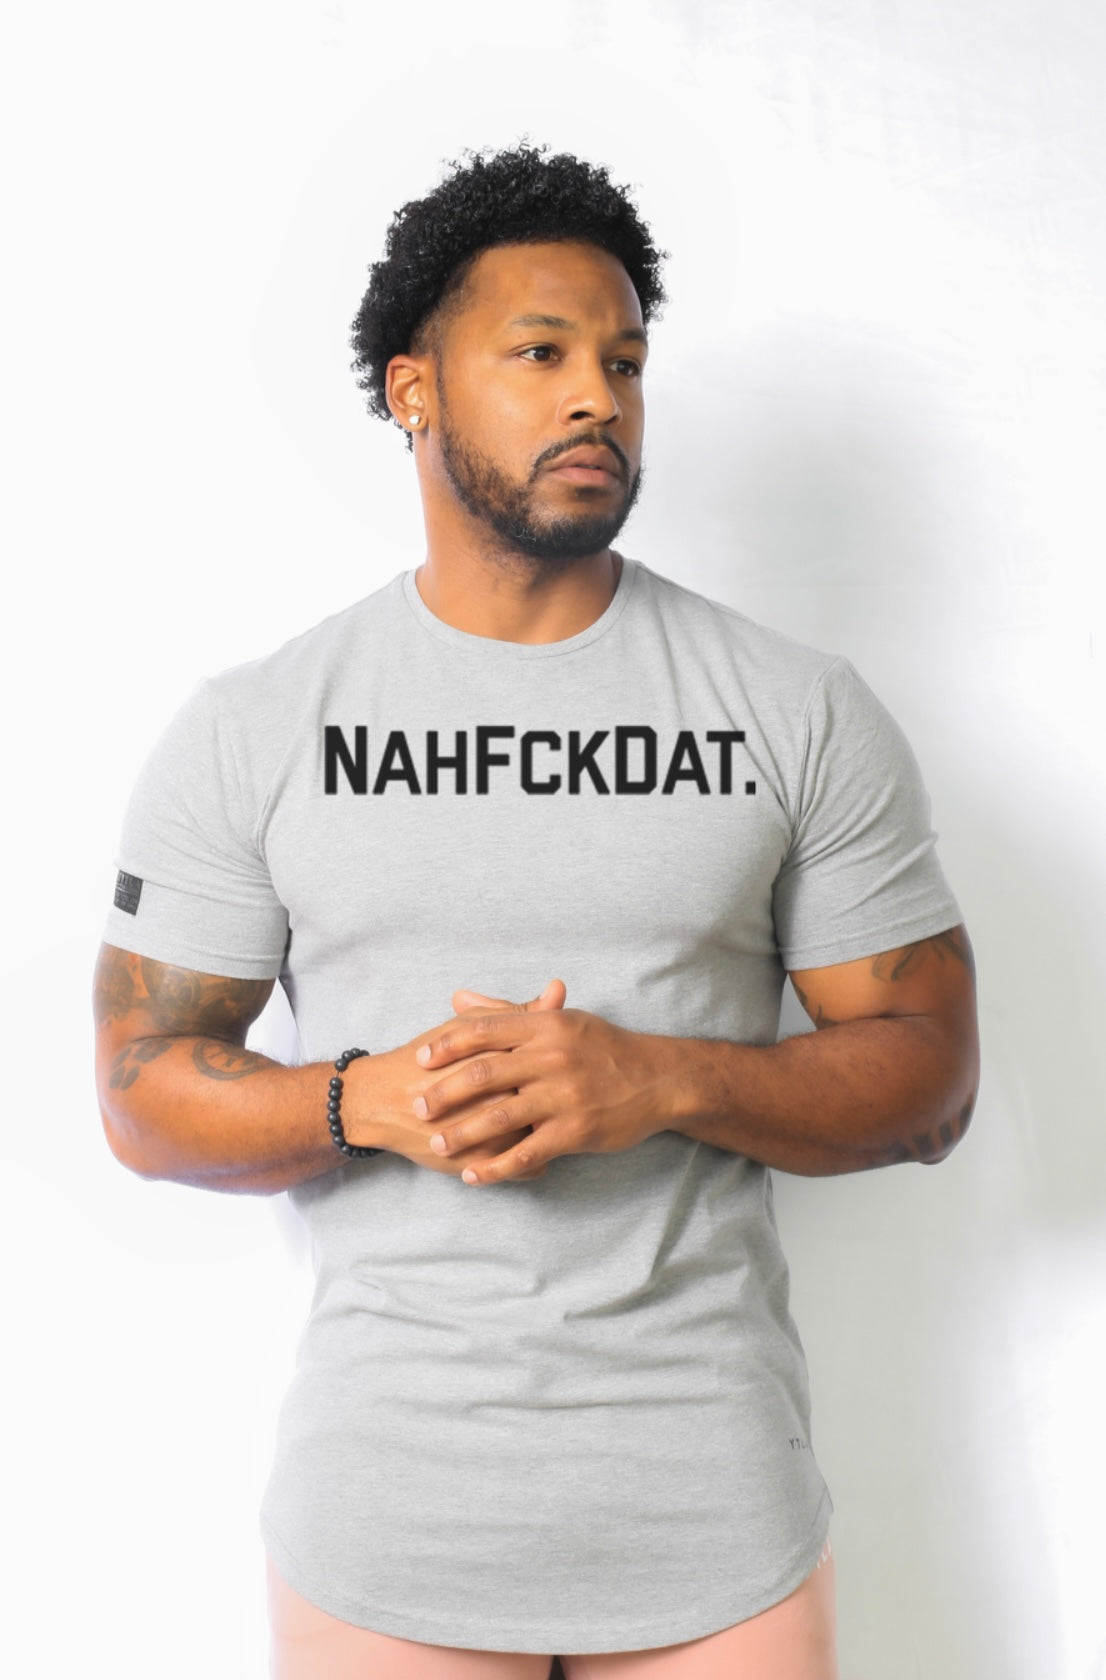 NahFckDat Elongated T-Shirt